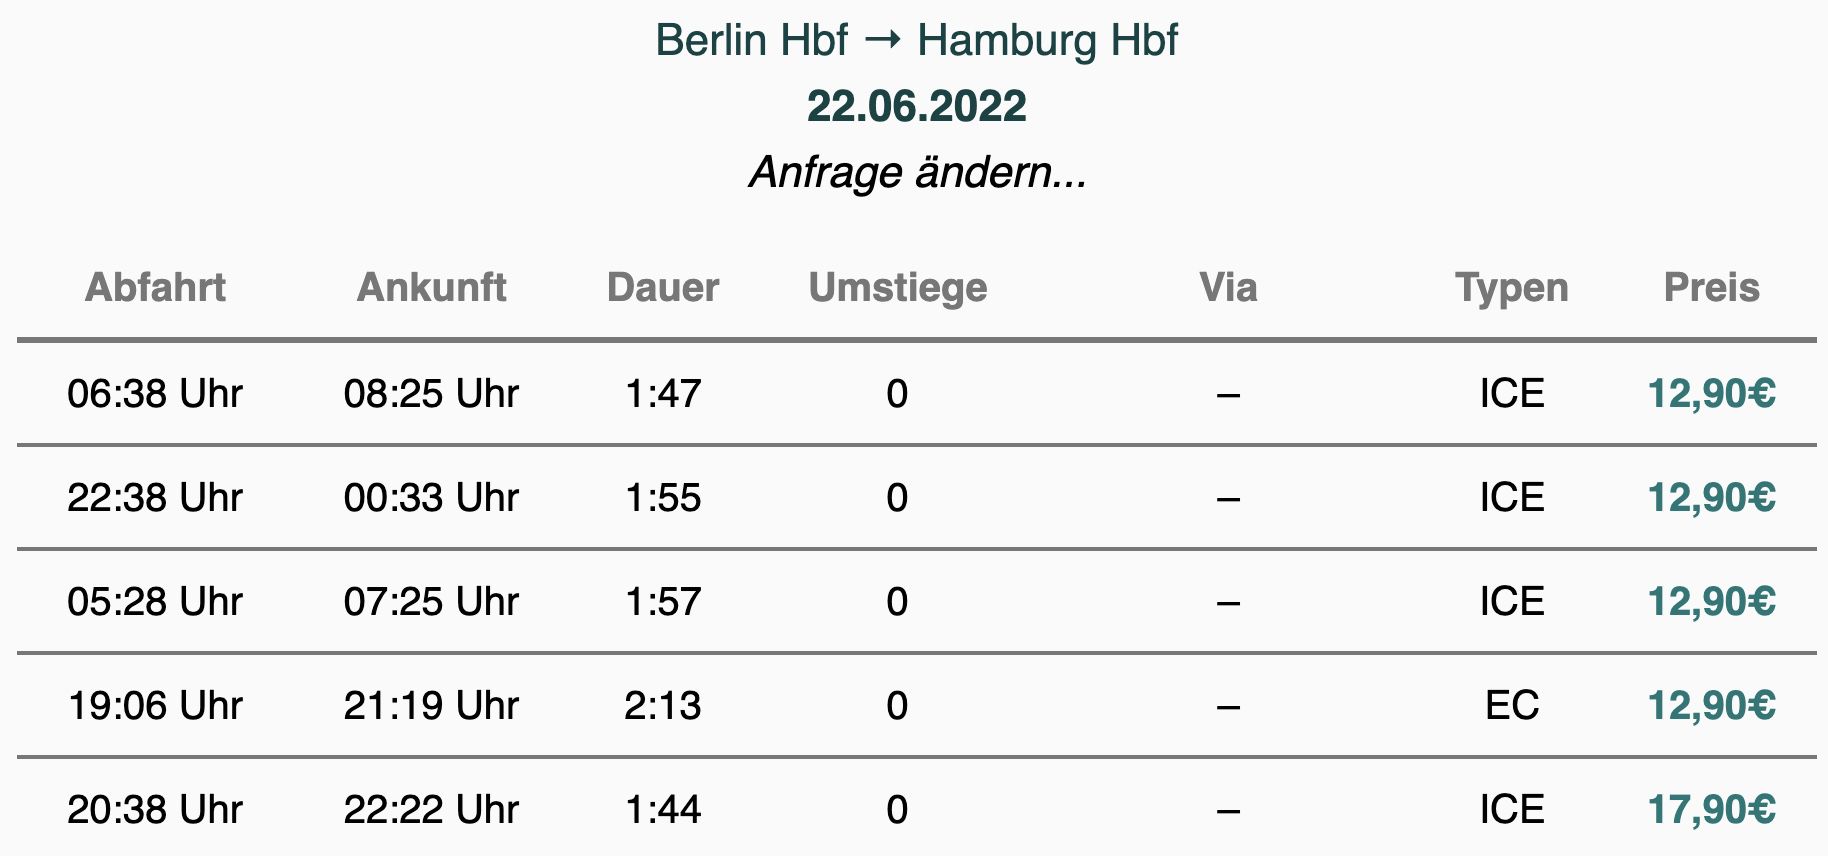 Deutsche Bahn Sparpreis Aktion   Fahrt ab 12,90€ in der 2. Klasse   mit BahnCard 25 ab 9,67€